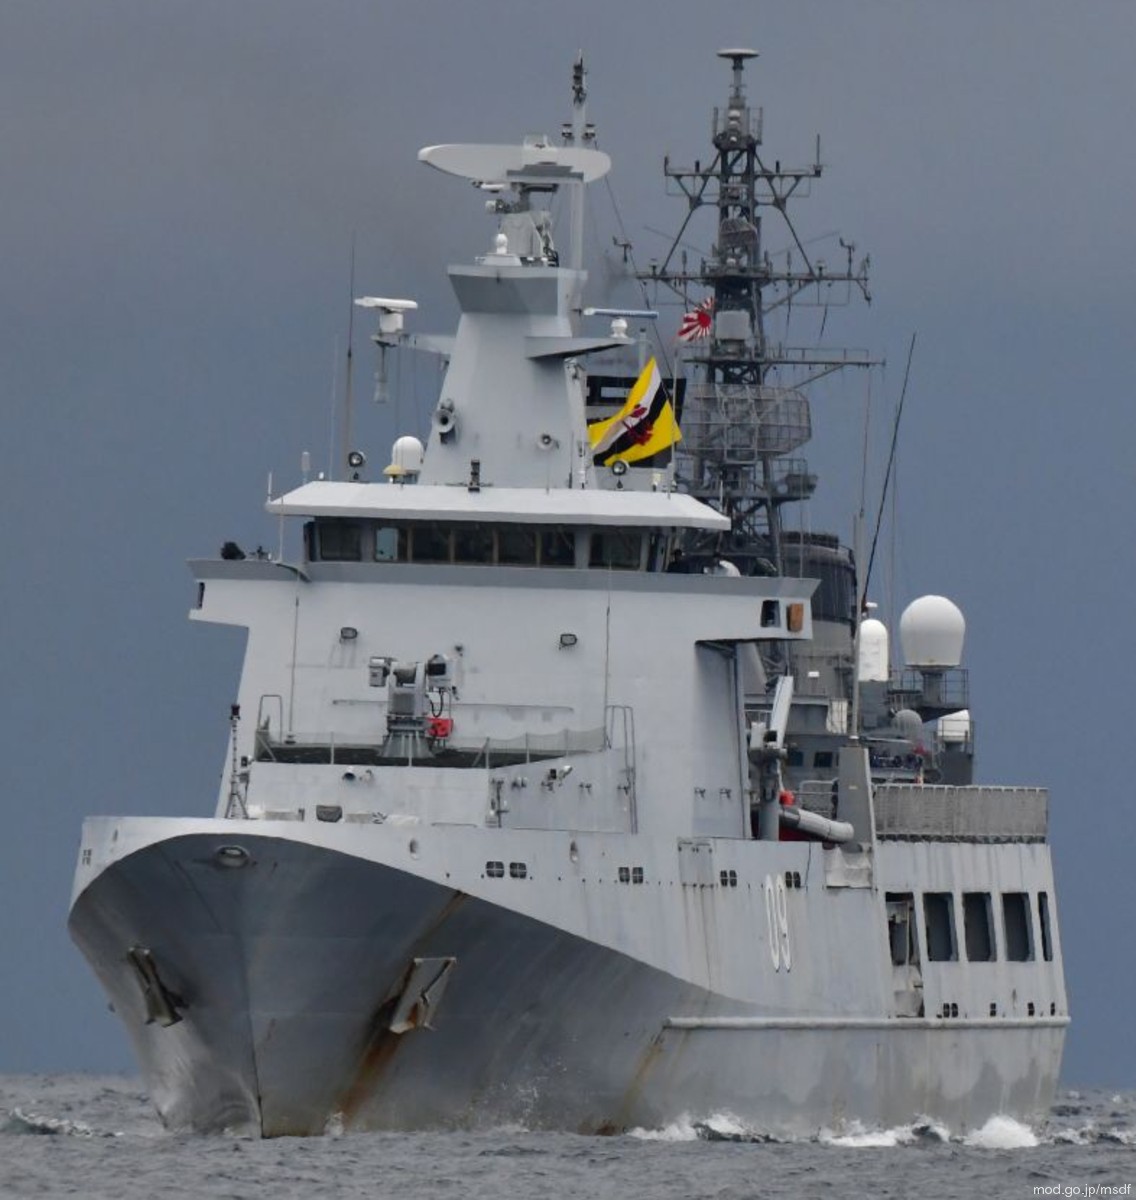 opv 09 kdb daruttaqwa offshore patrol vessel darussalem class royal brunei navy 04